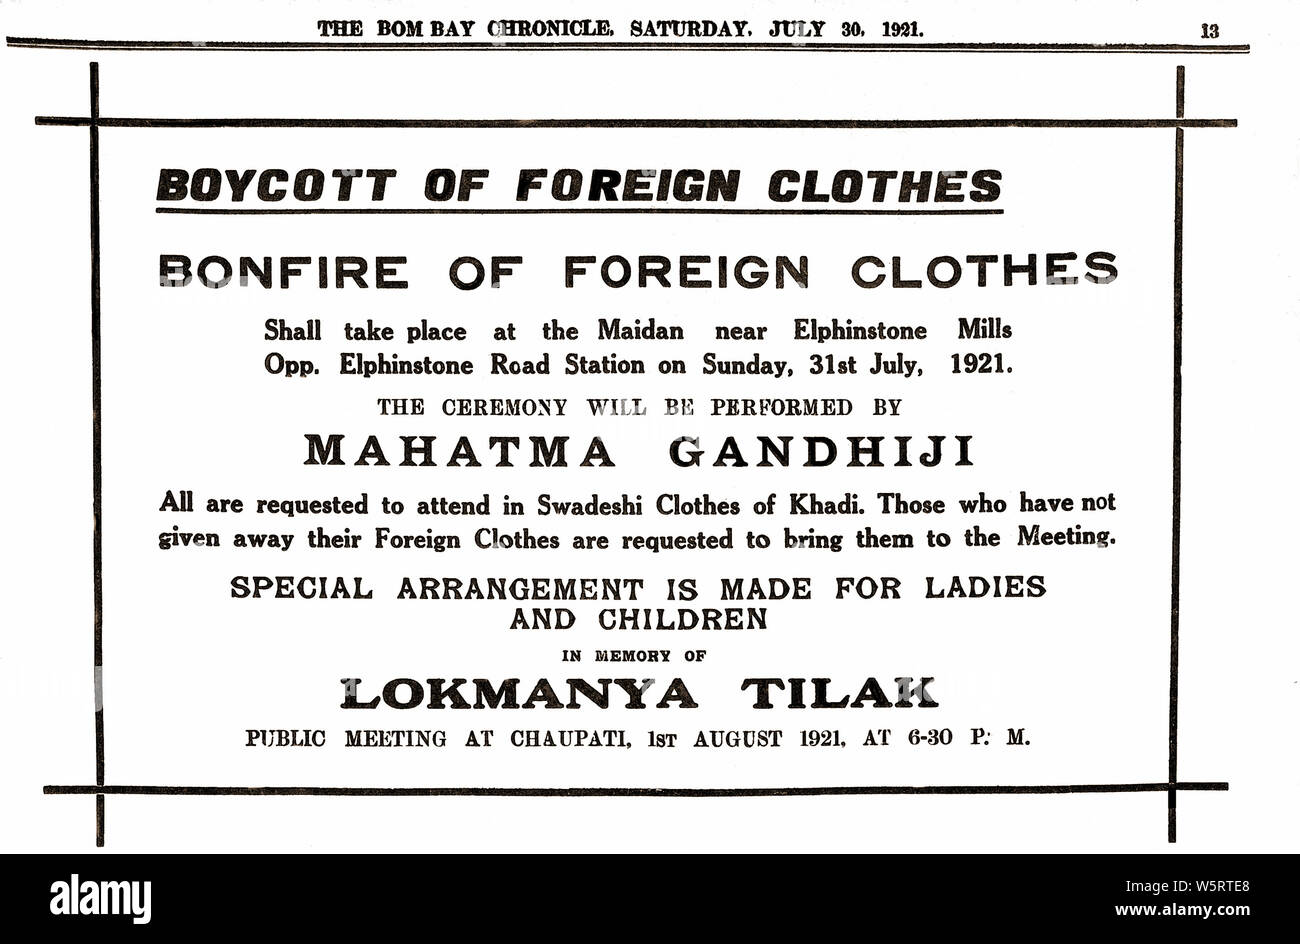 Appell von Mahatma Gandhi zum Boykott ausländischer Kleidung Indien Asien 30. Juli 1921 Alter Jahrgang 1900s Bild Stockfoto